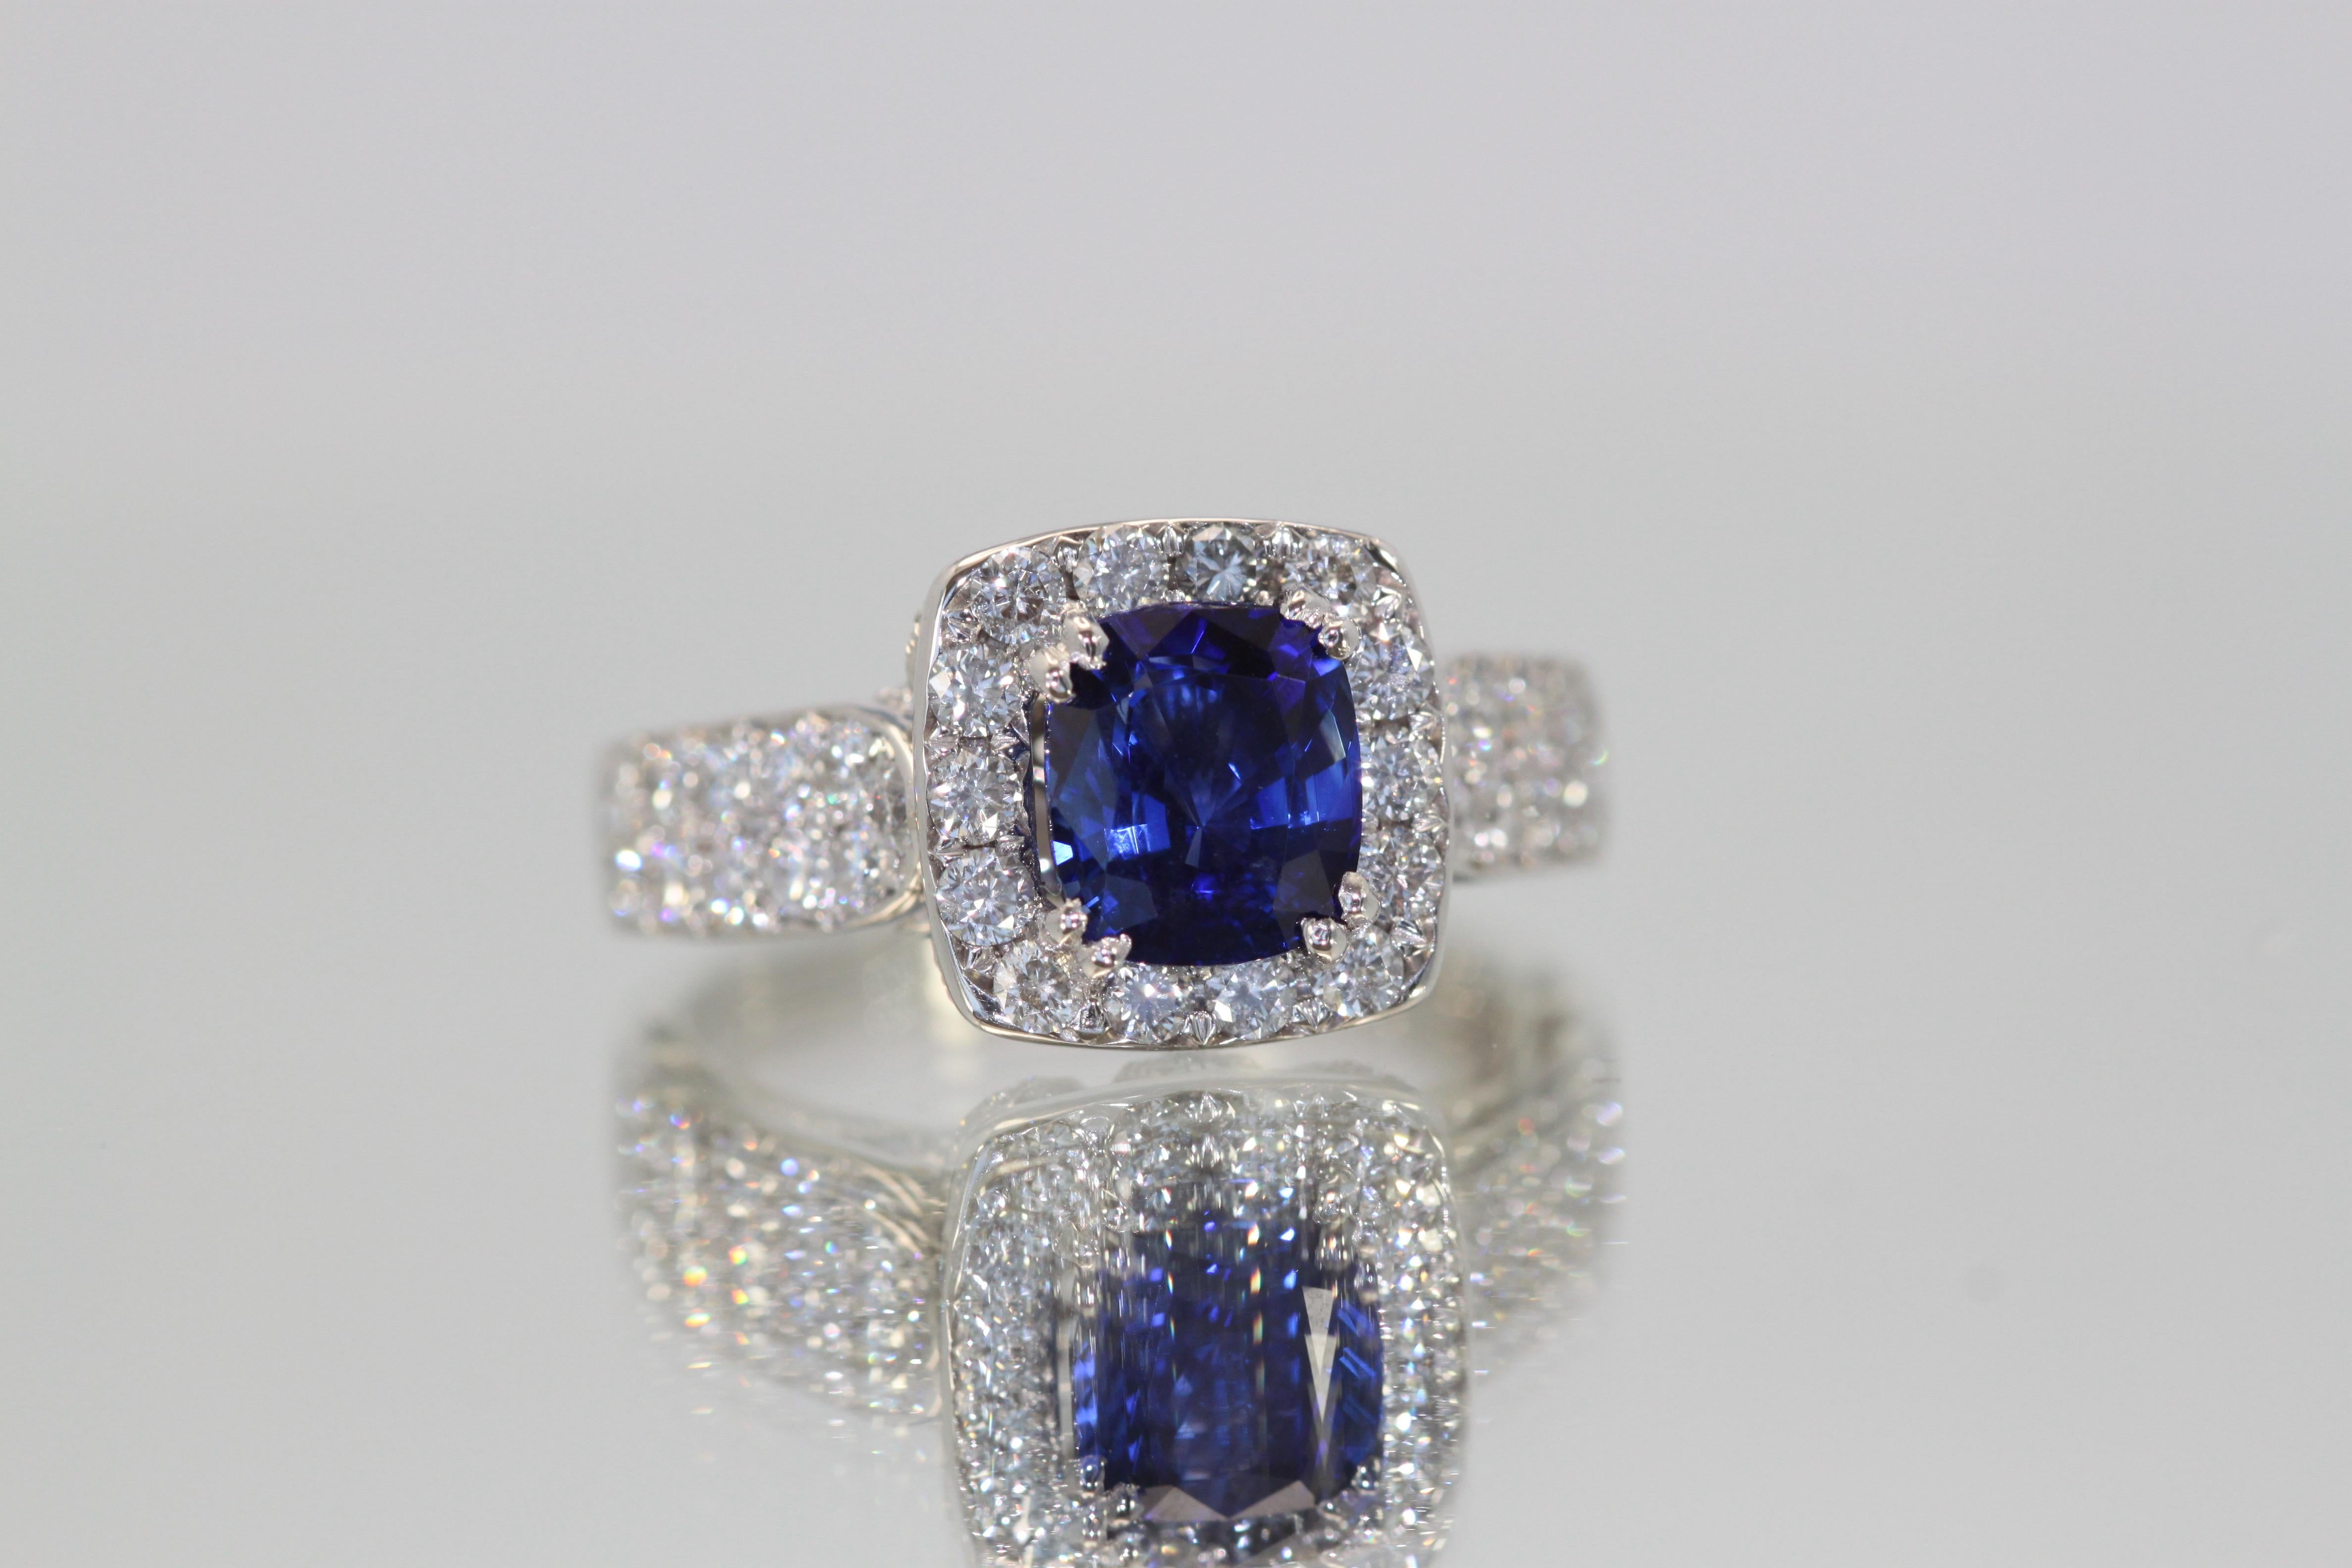 Tout le monde aime une belle bague en saphir bleu.  Celui-ci provient de Birmanie et le saphir est serti d'un entourage de diamants.  Il s'agit d'un magnifique bleu profond avec un éclat magnifique. La couleur est absolument magnifique, un véritable